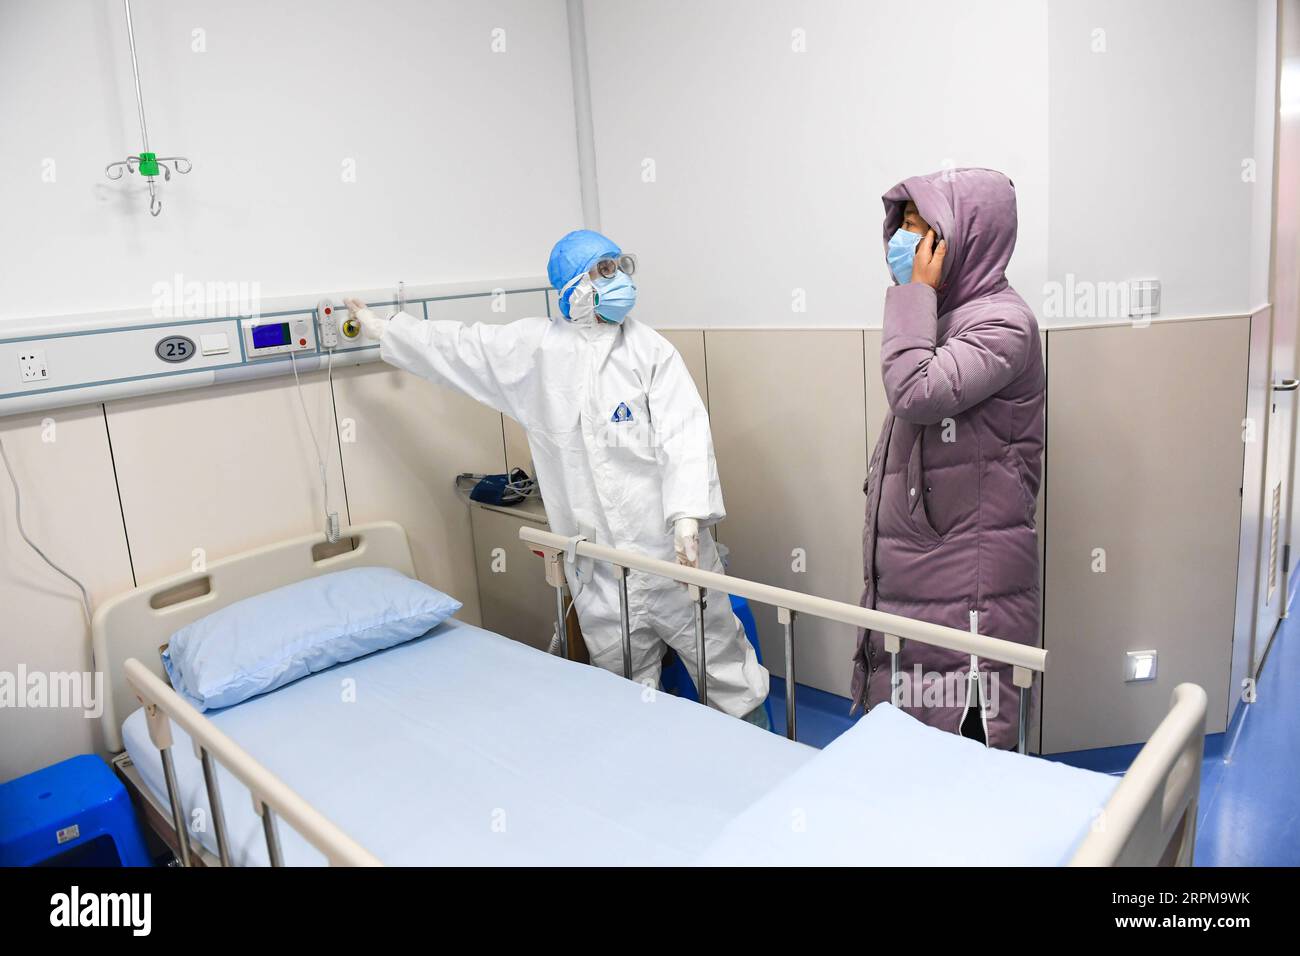 200205 -- WENZHOU, le 5 février 2020 -- le personnel médical assiste à un exercice d'acceptation et de traitement des patients au 2e hôpital affilié et à l'hôpital pour enfants Yuying de l'Université médicale de Wenzhou à Wenzhou, dans la province du Zhejiang de l'est de la Chine, le 4 février 2020. L'hôpital a commencé à fonctionner mardi, devenant le troisième hôpital désigné pour traiter les patients atteints de pneumonie infectés par le nouveau coronavirus dans la ville. Il fournira initialement 100 lits à partir de février 6. L'hôpital compte au plus 800 lits, qui seront également mis en service si nécessaire. CHINE-ZHEJIANG-WENZHOU-CORONAVIRUS-DESIGNA Banque D'Images